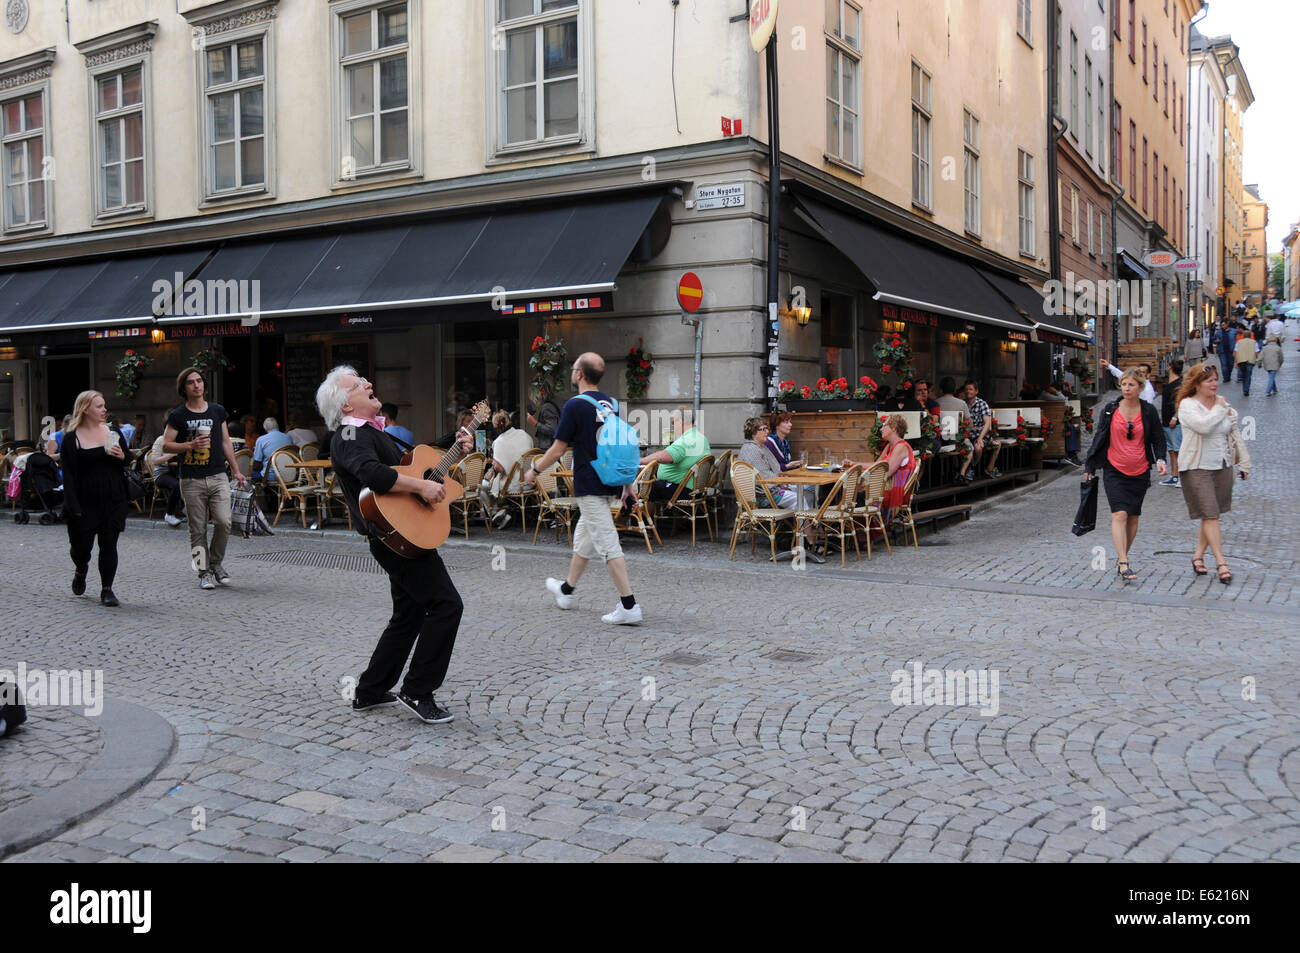 La vida en la calle en el casco antiguo de Estocolmo, con restaurantes, tiendas de café en la acera, los peatones y músicos a lo largo de calles adoquinadas Foto de stock